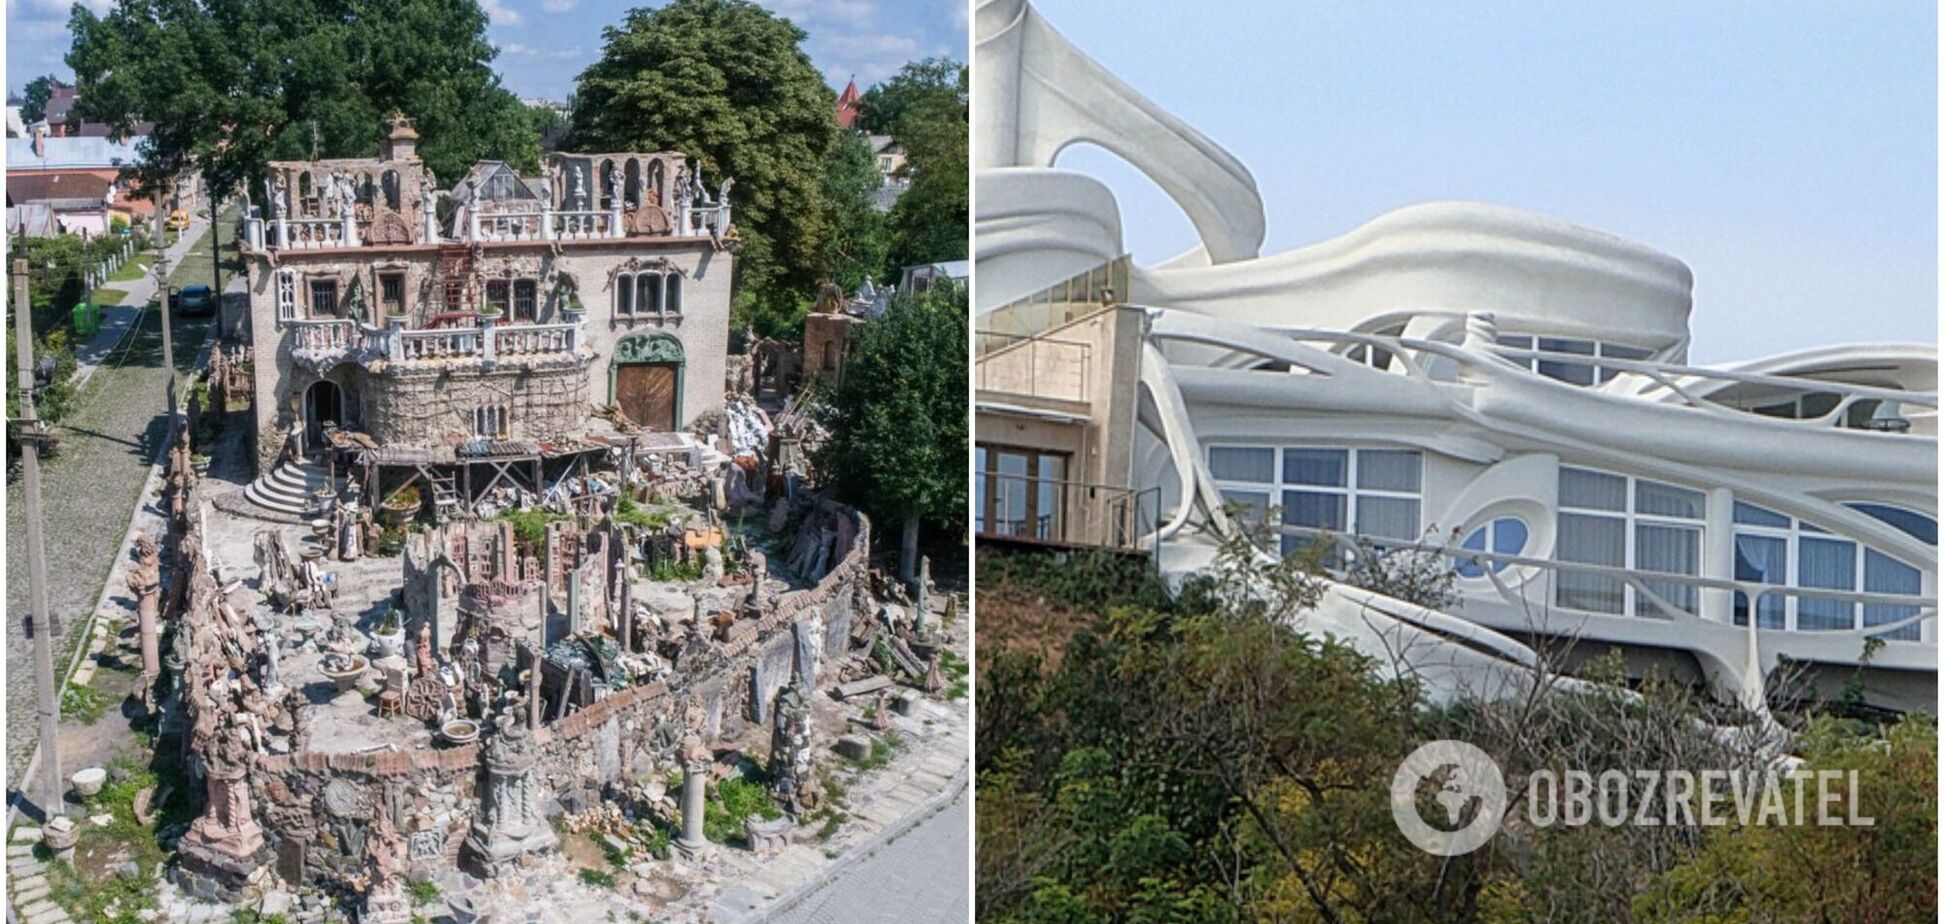 7 самых необычных домов в Украине: здание-волна, кроссворд и другие. Фото